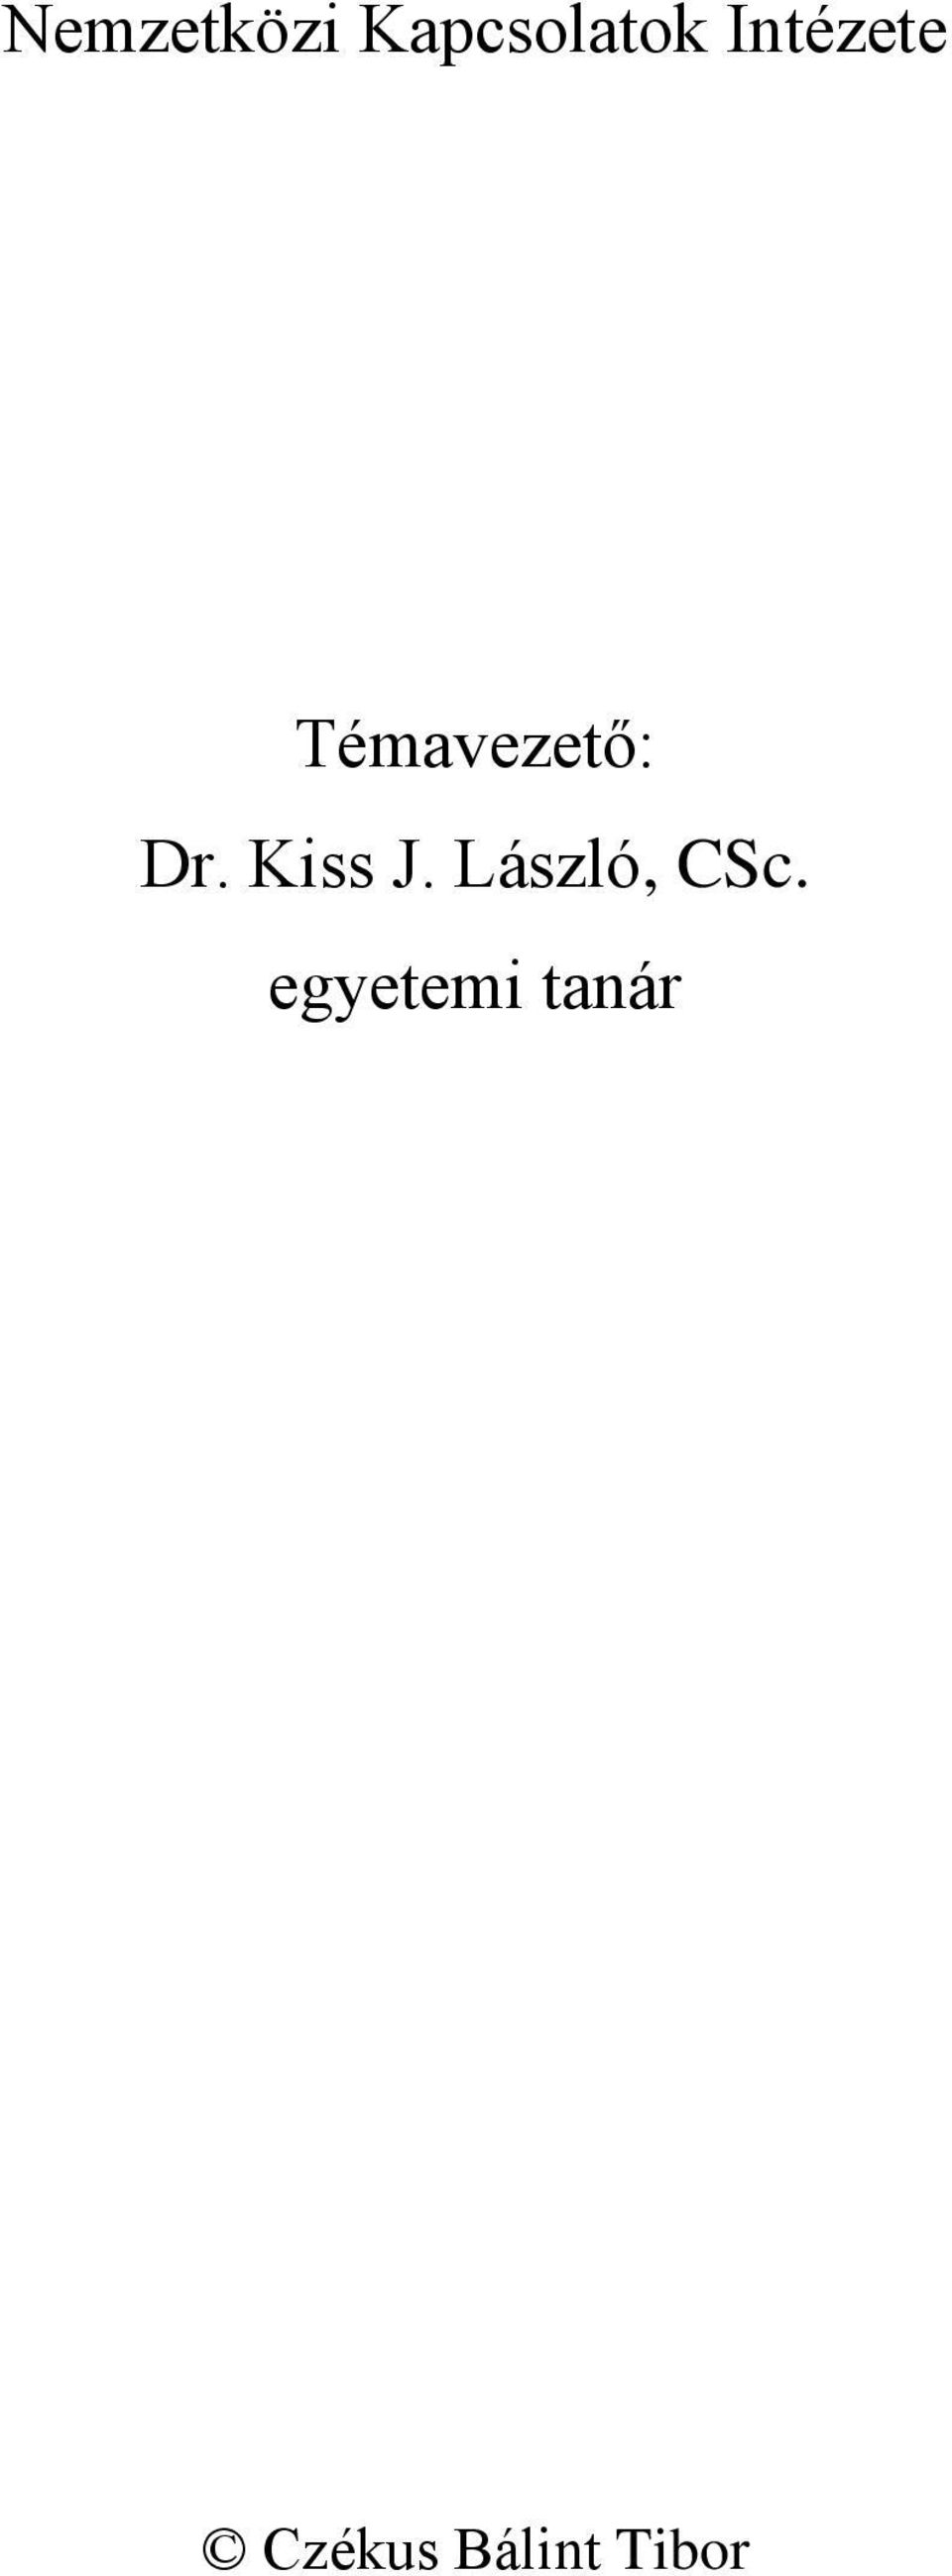 Kiss J. László, CSc.